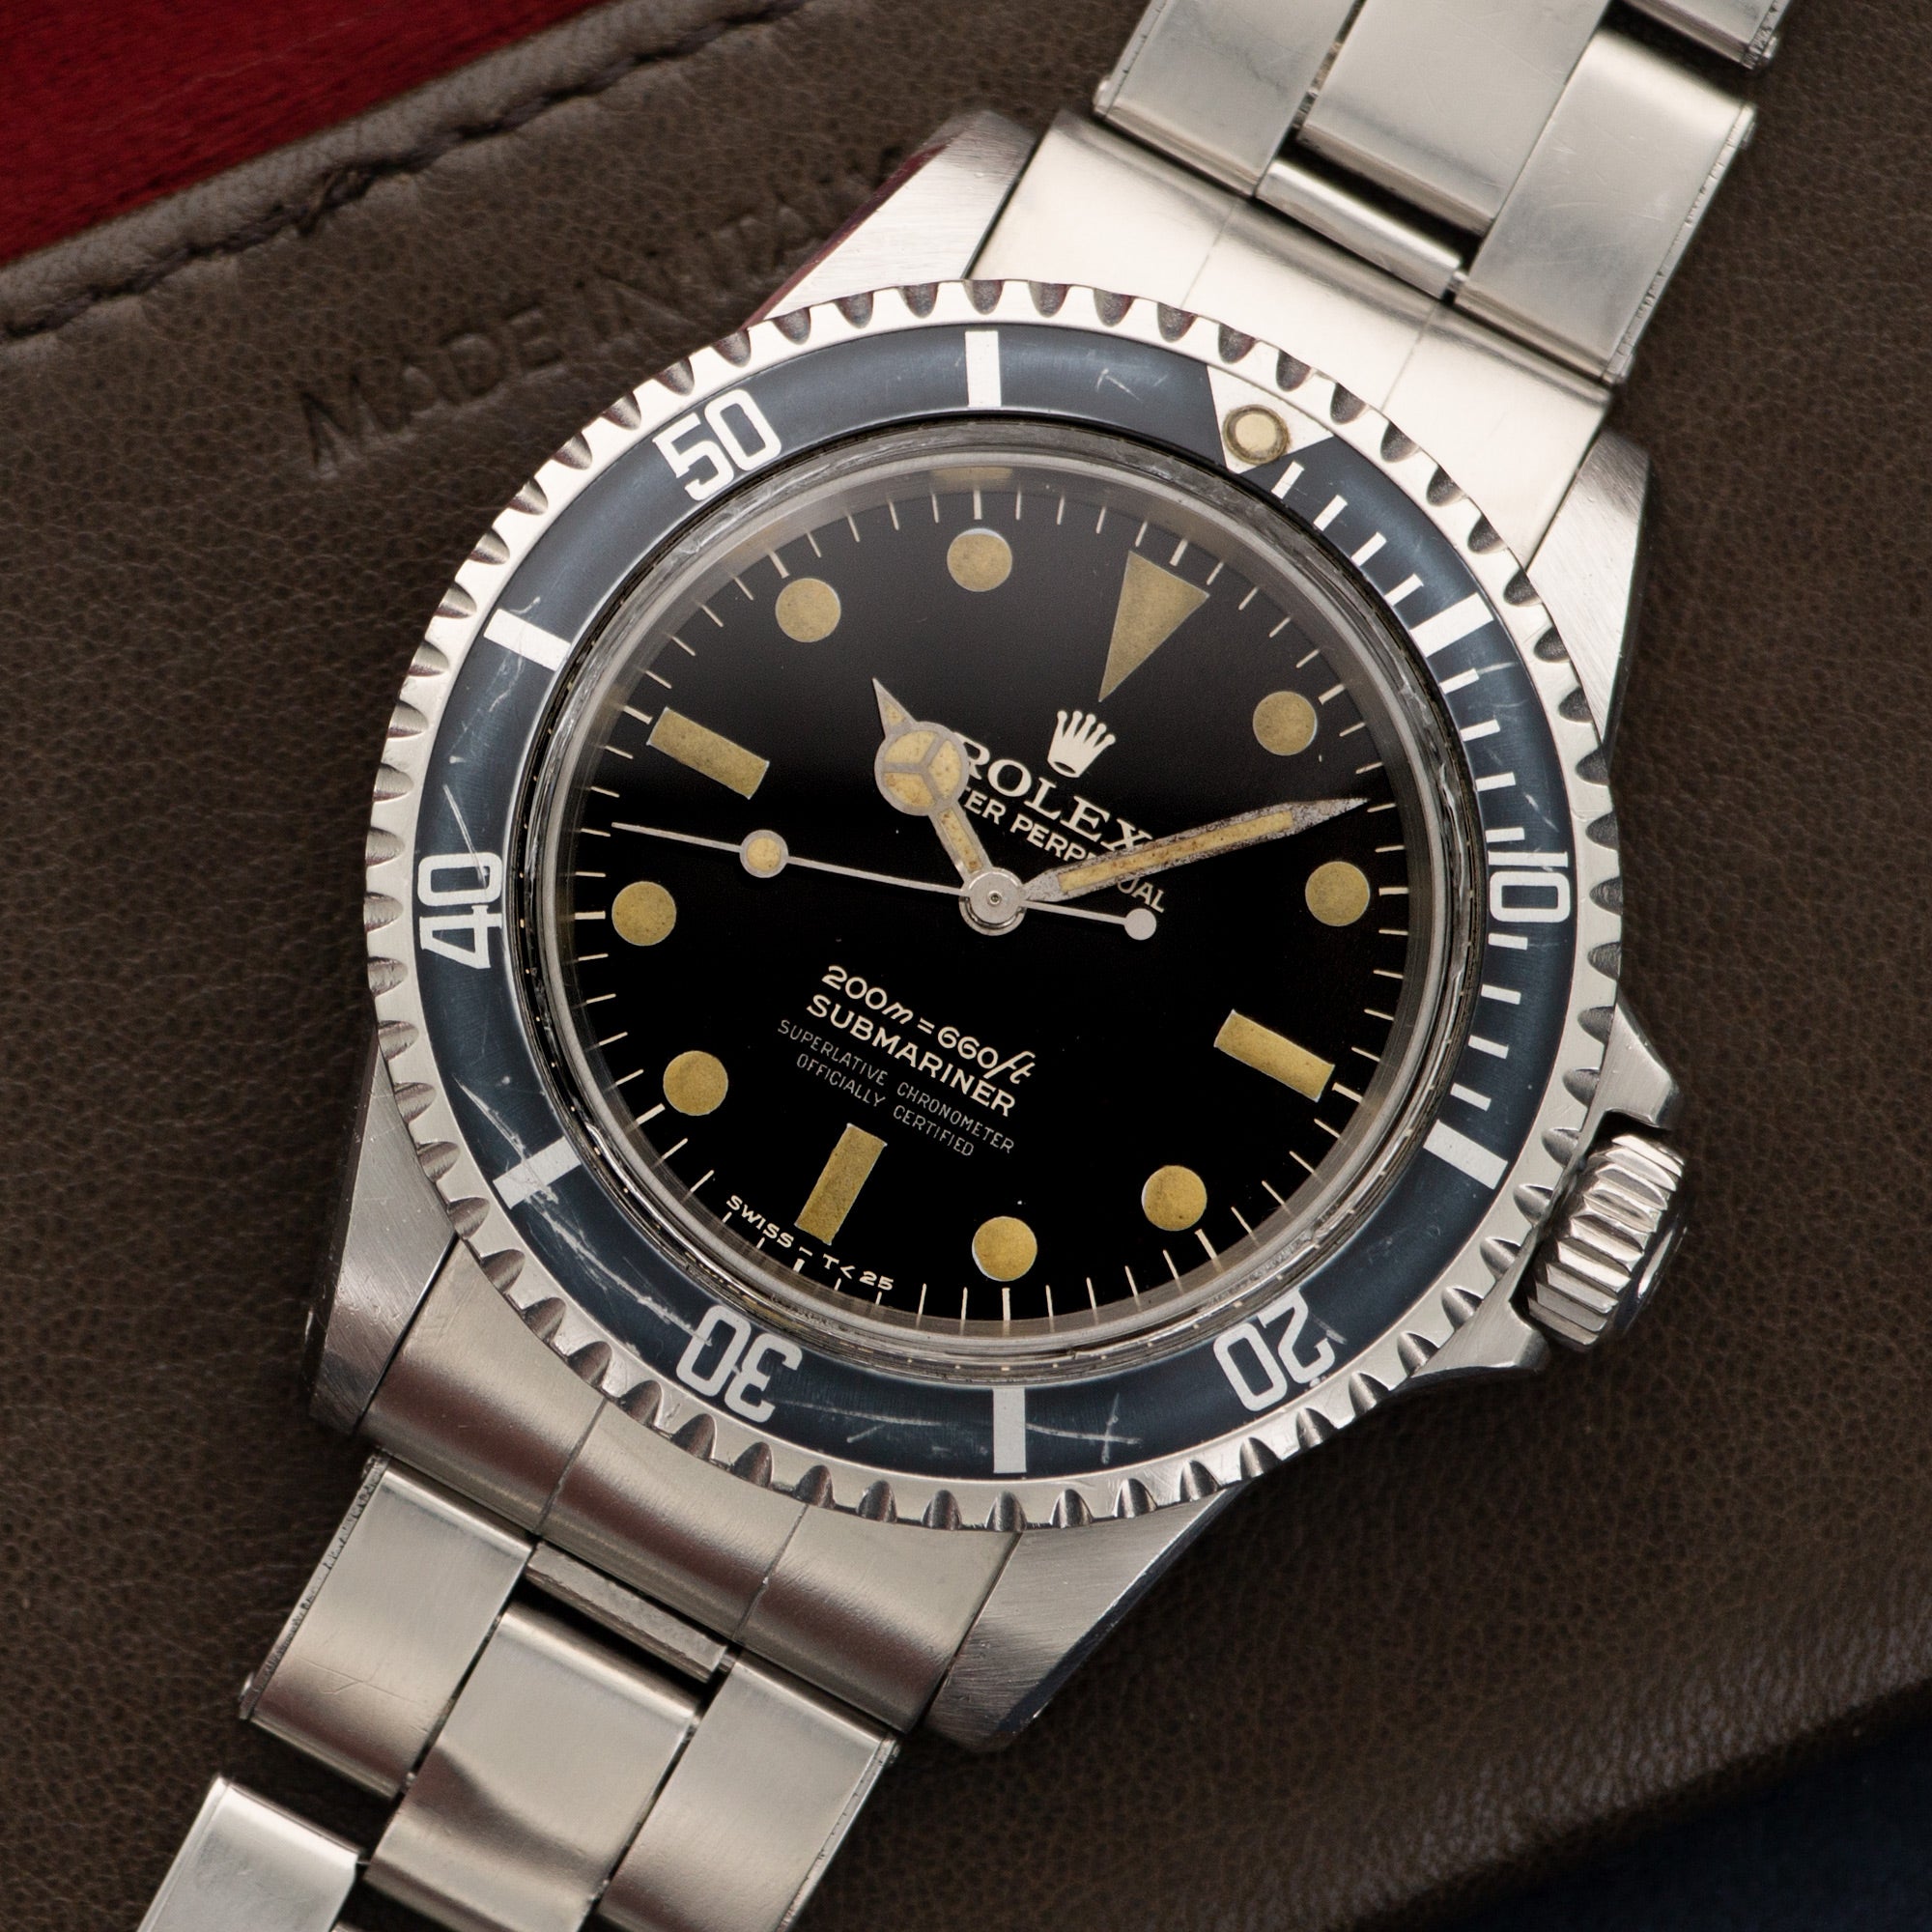 Rolex - Rolex Submariner 4-Line Gilt Dial Watch Ref. 5512 - The Keystone Watches